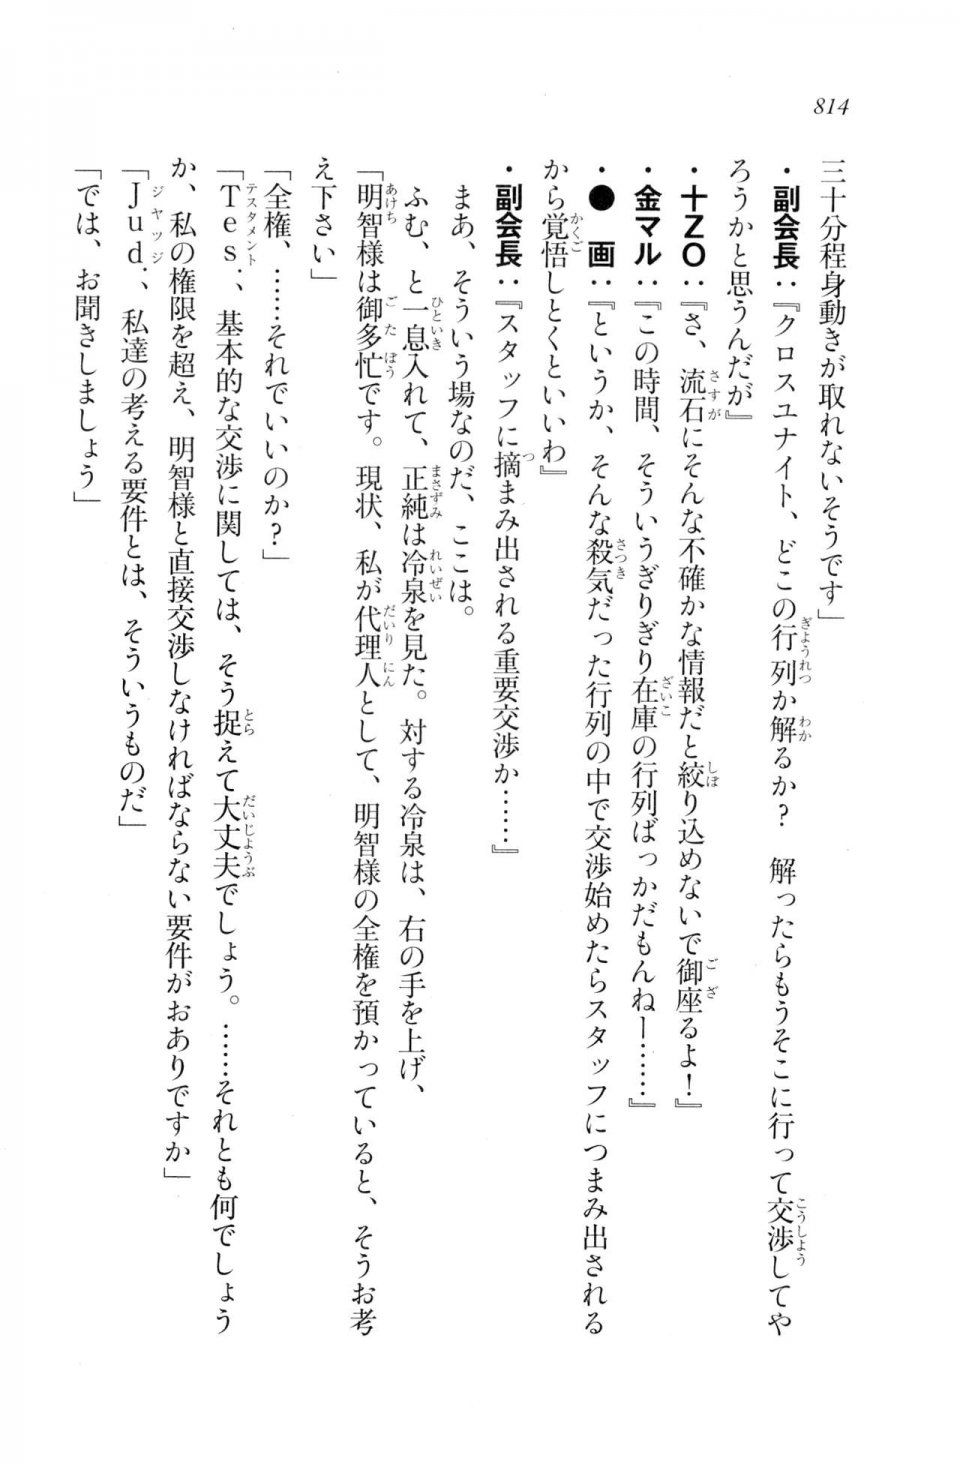 Kyoukai Senjou no Horizon LN Vol 20(8B) - Photo #814